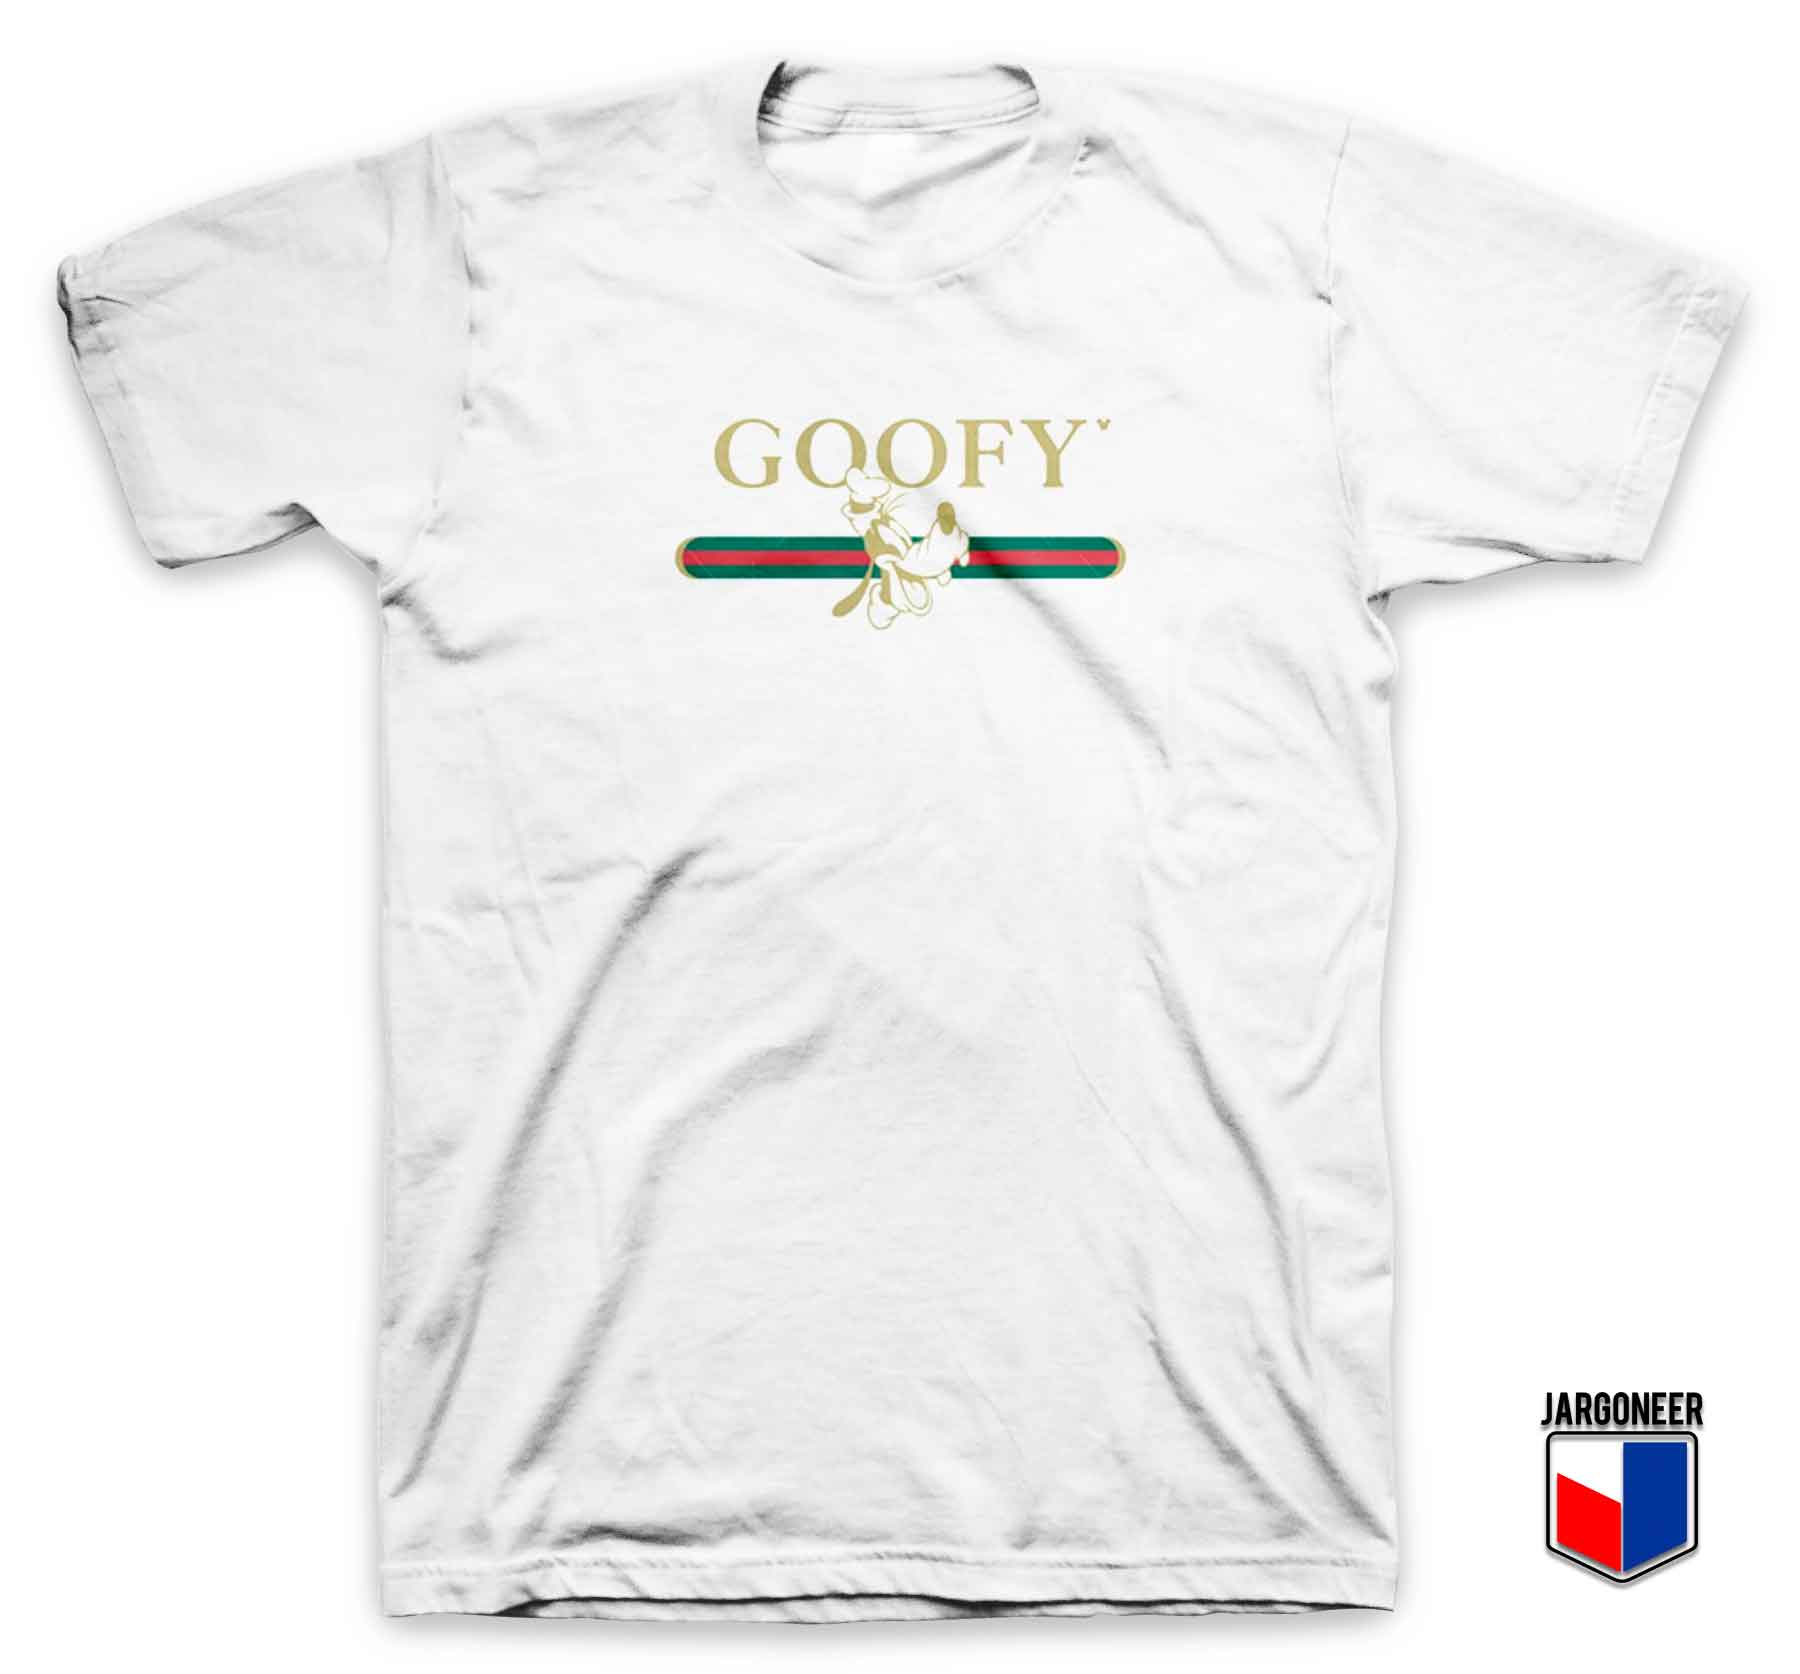 Goofy Parody - Shop Unique Graphic Cool Shirt Designs